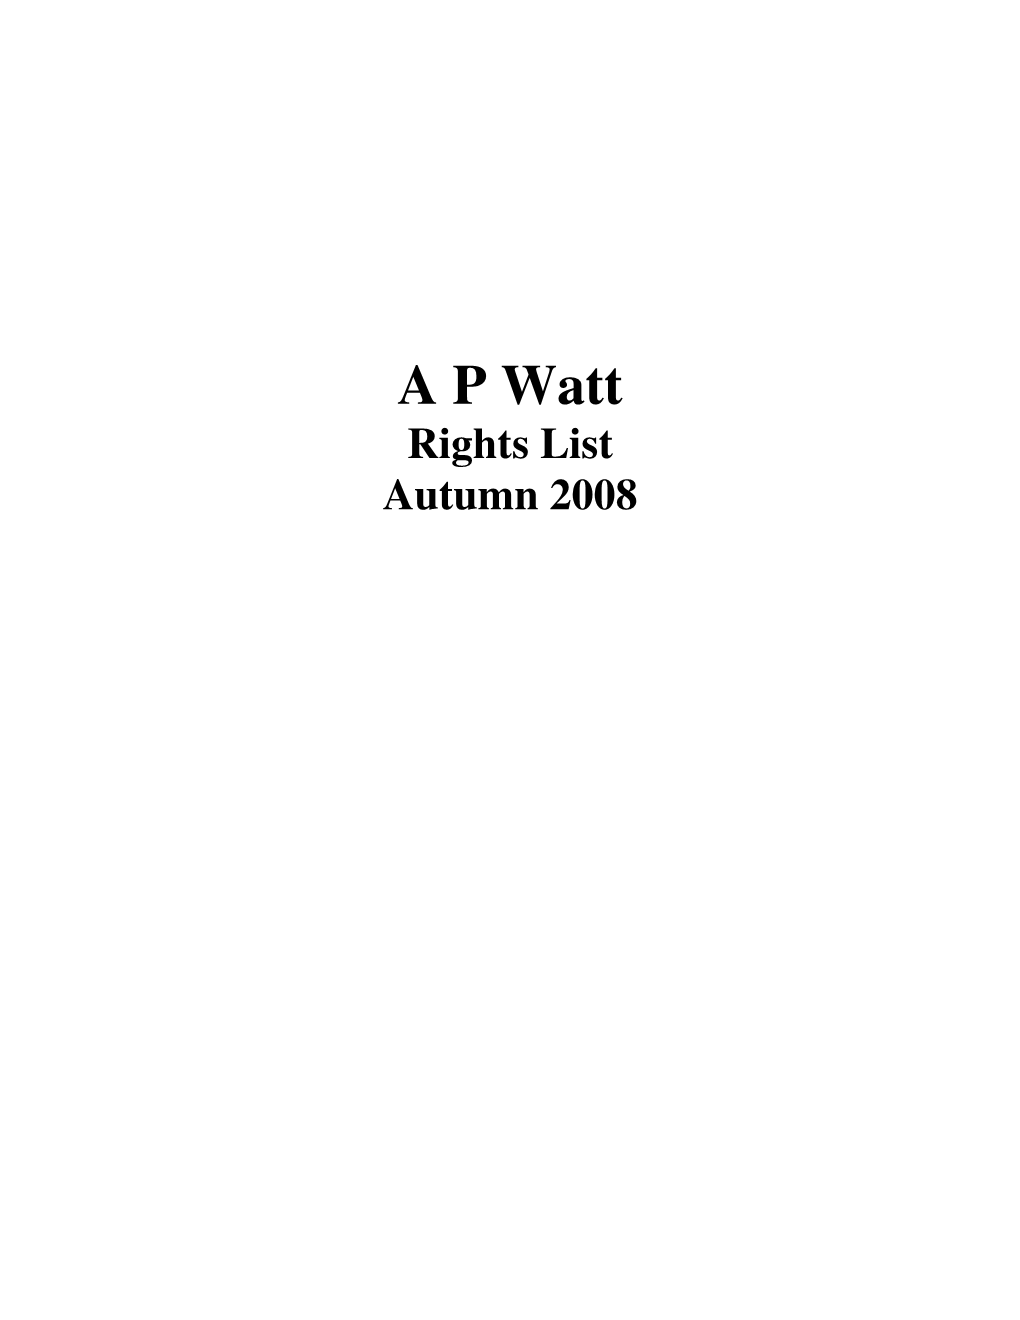 A P Watt Rights List